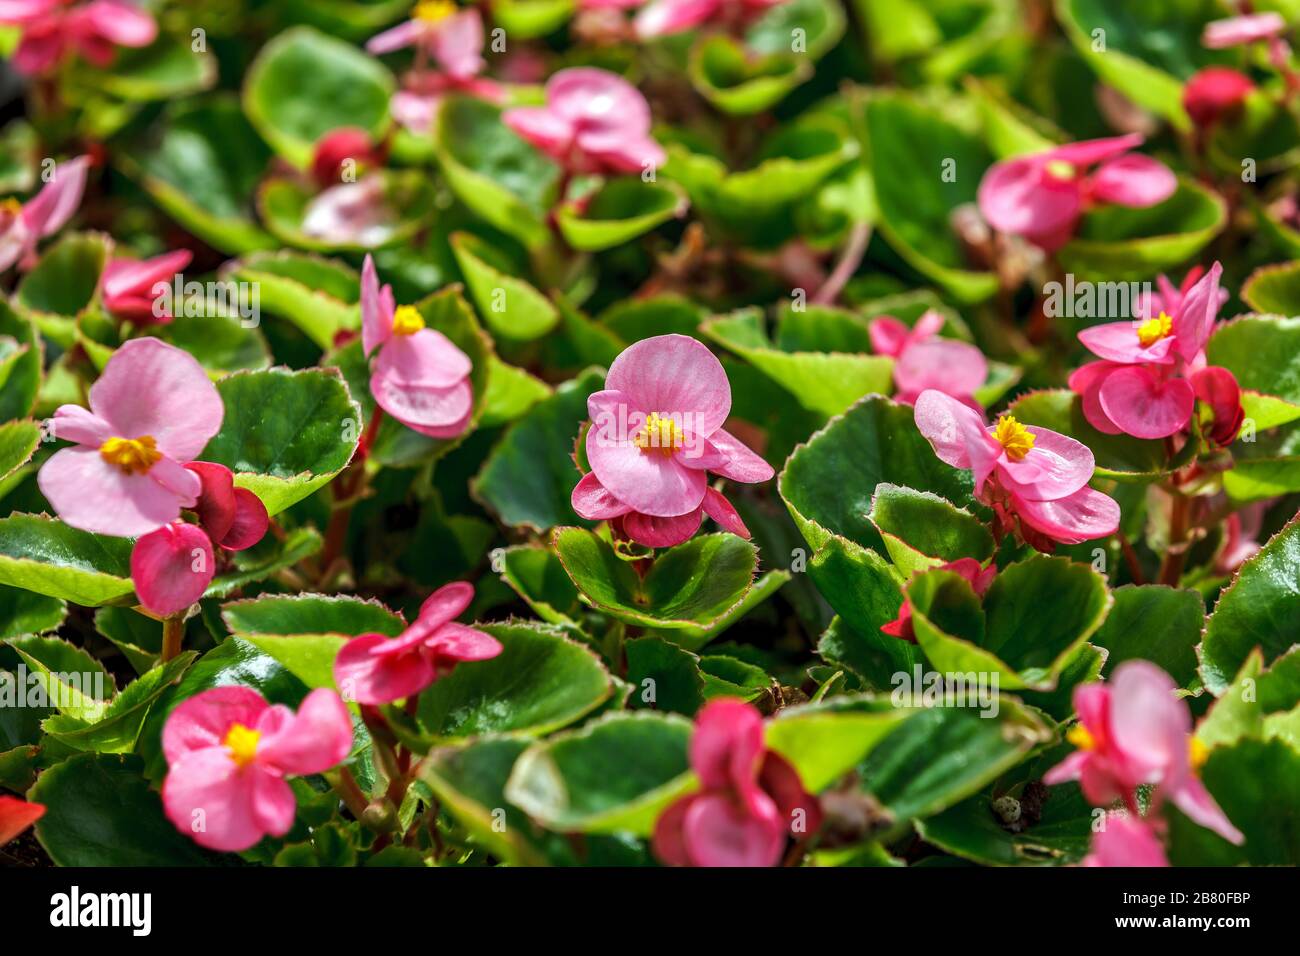 Pink wax begonia (fiborous begonia) in garden detail Stock Photo